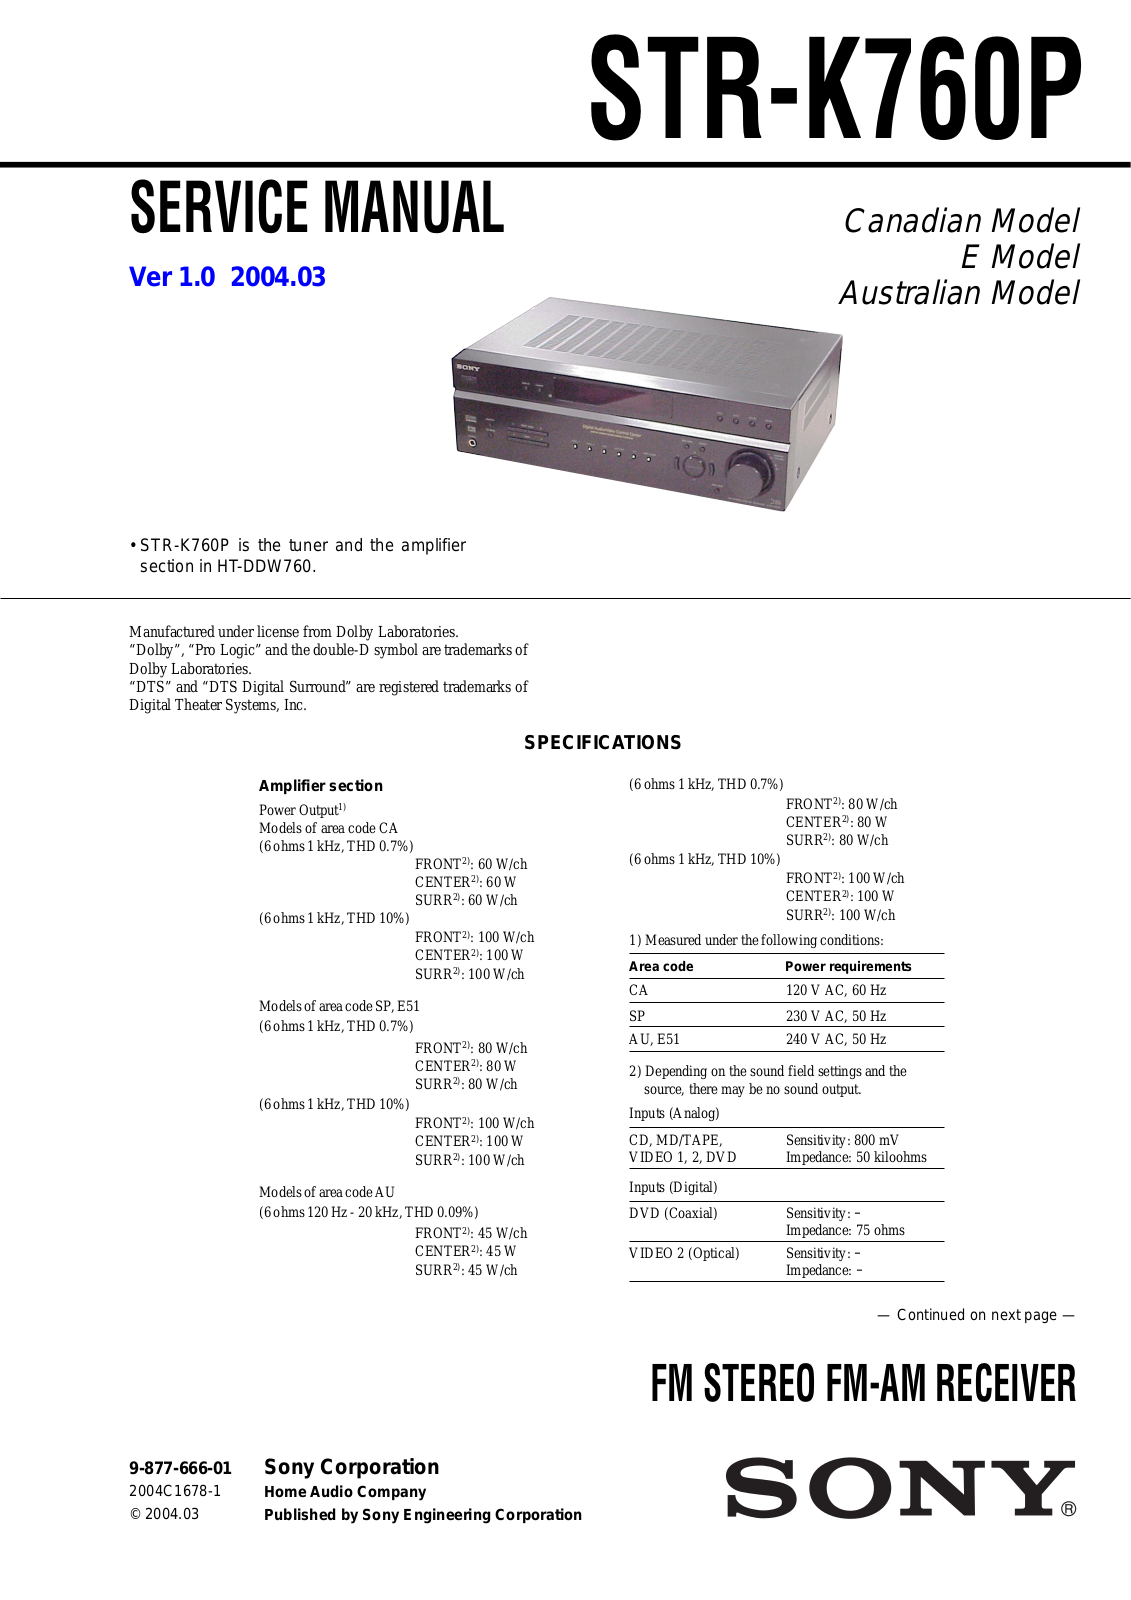 SONY STR K760P v1 0 Service Manual